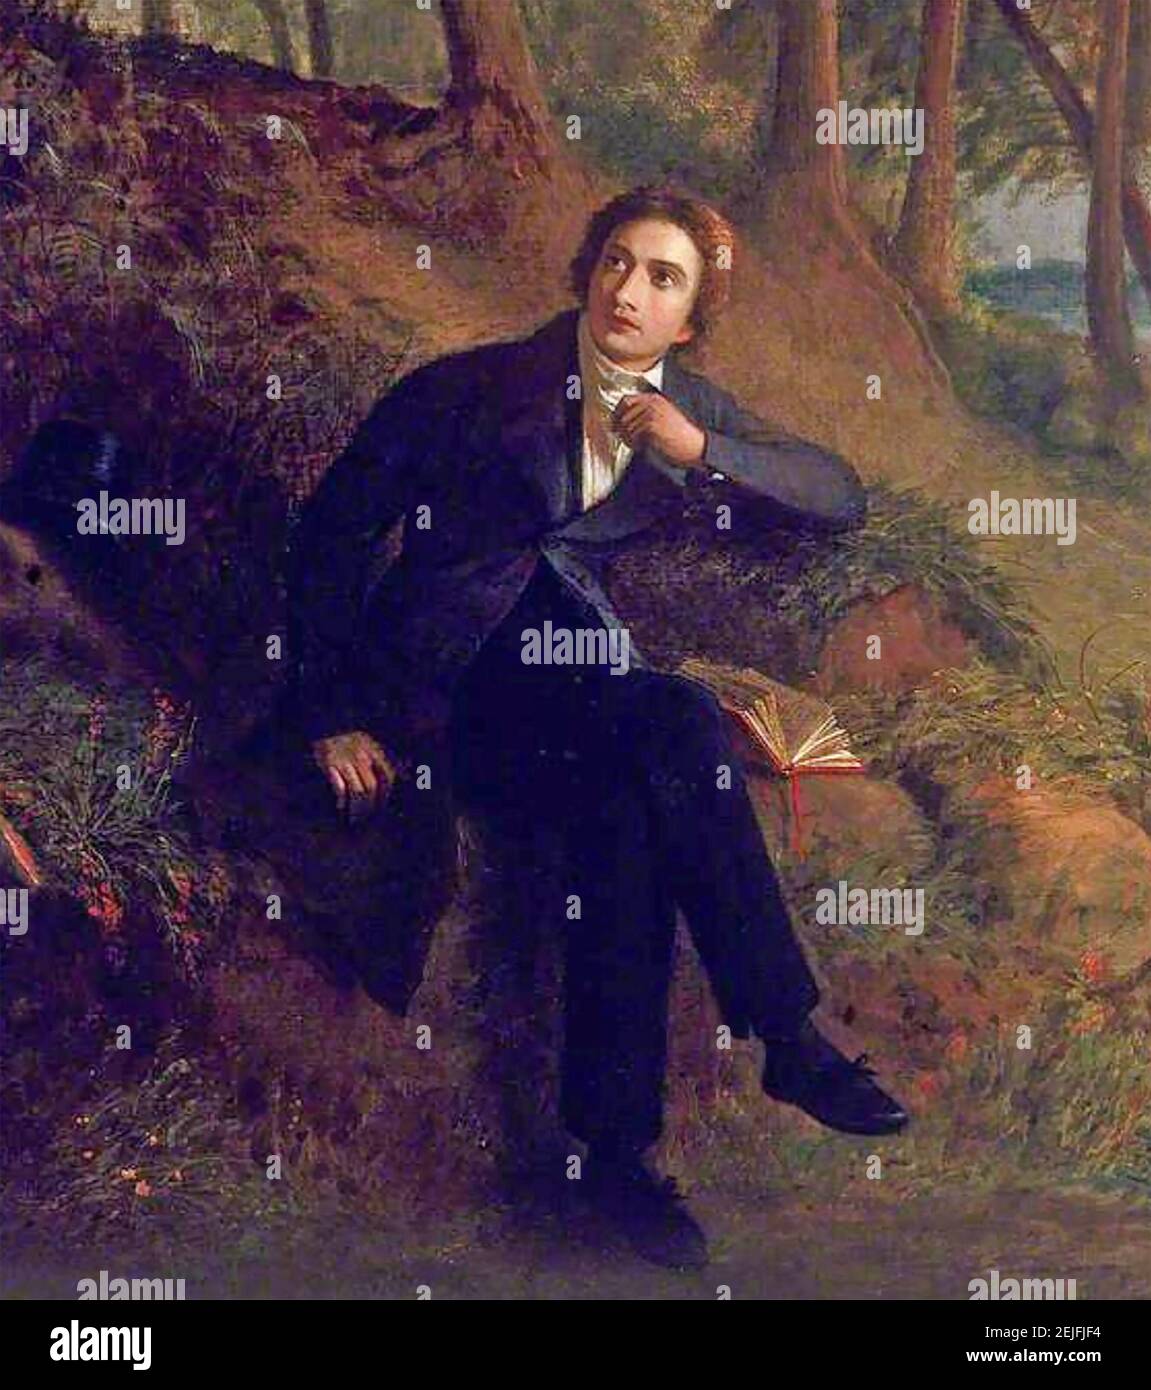 JOHN KEATS (1795-1821) poète anglais. Détail de la peinture de 1845 par Joseph Severn montrant Keats assis sur Hampstead Heath à l'écoute d'une Nightingale Banque D'Images